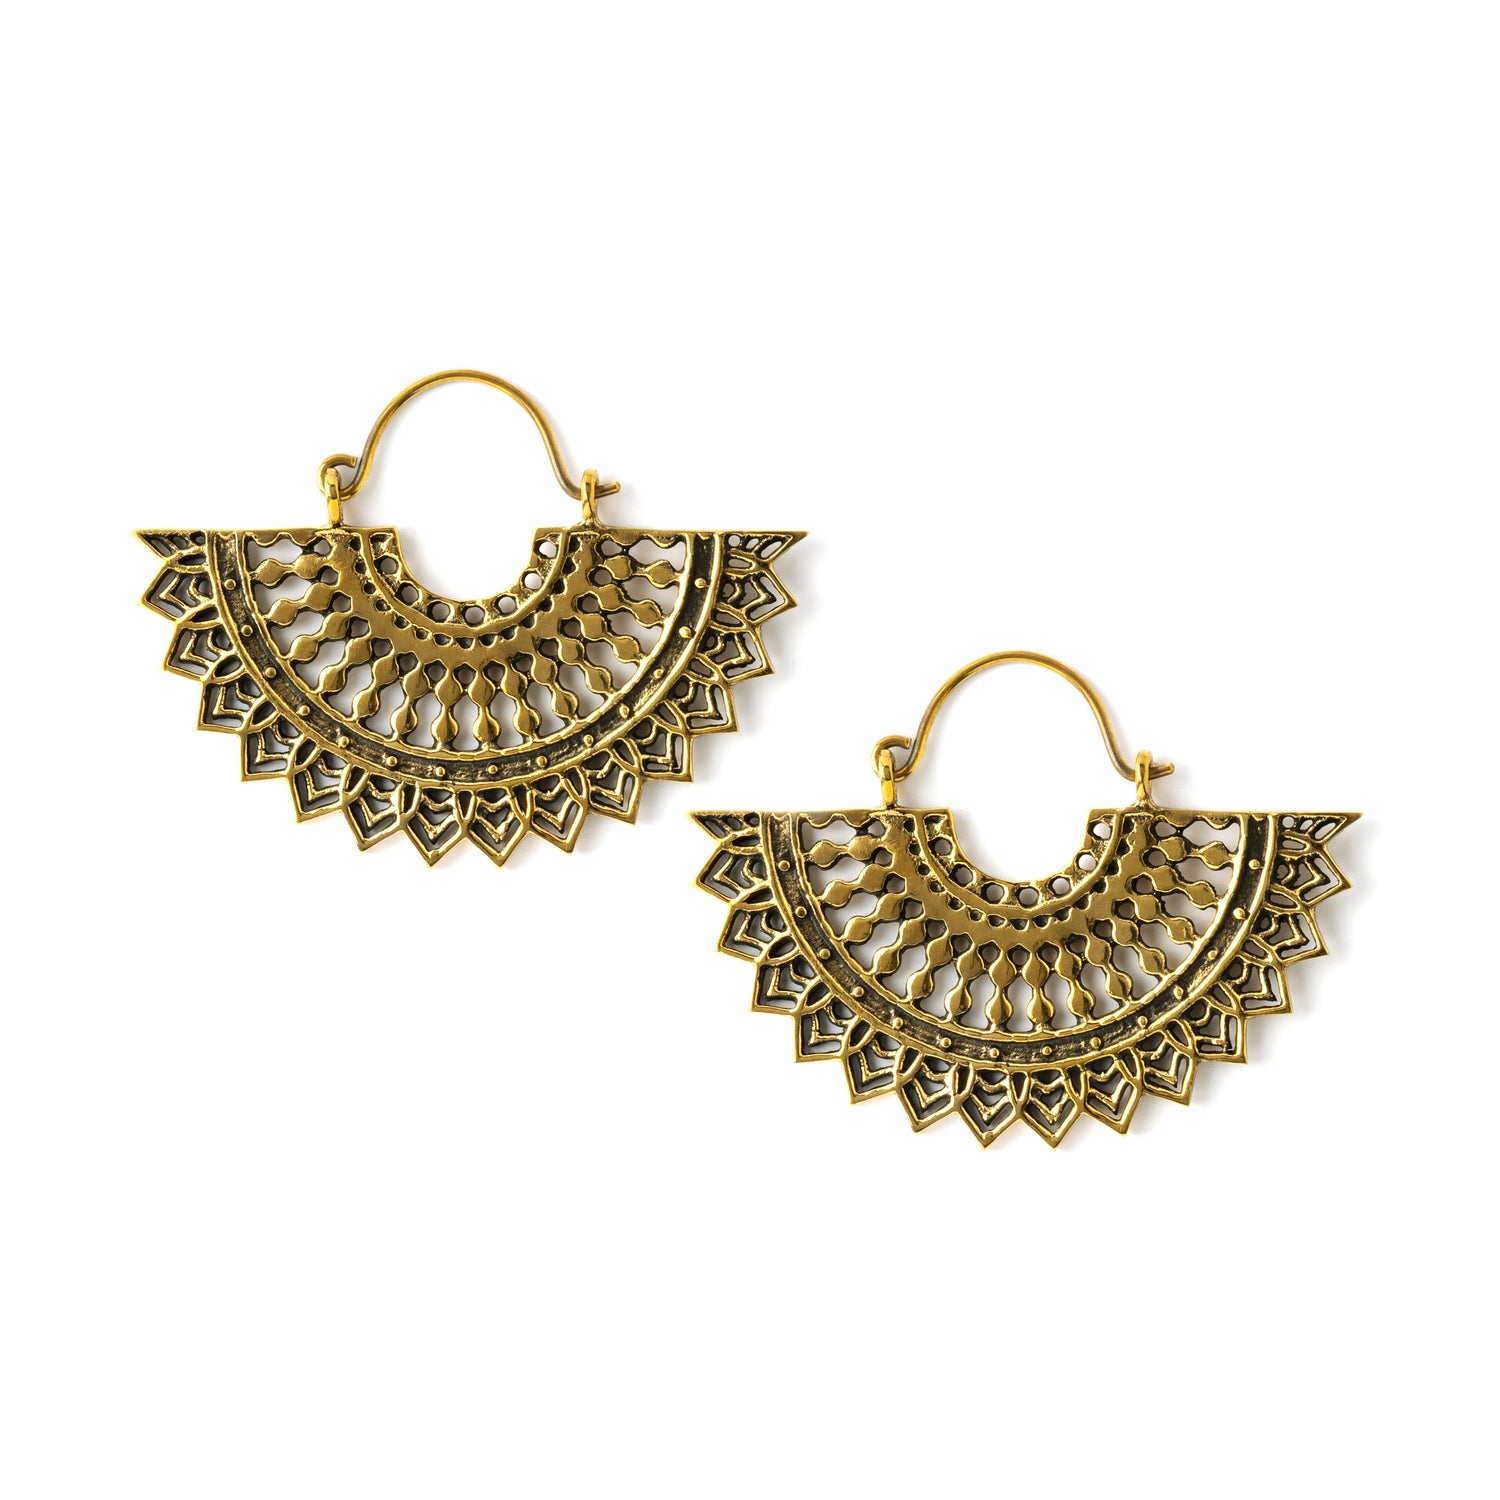 pair of golden brass fan shaped earrings frontal view